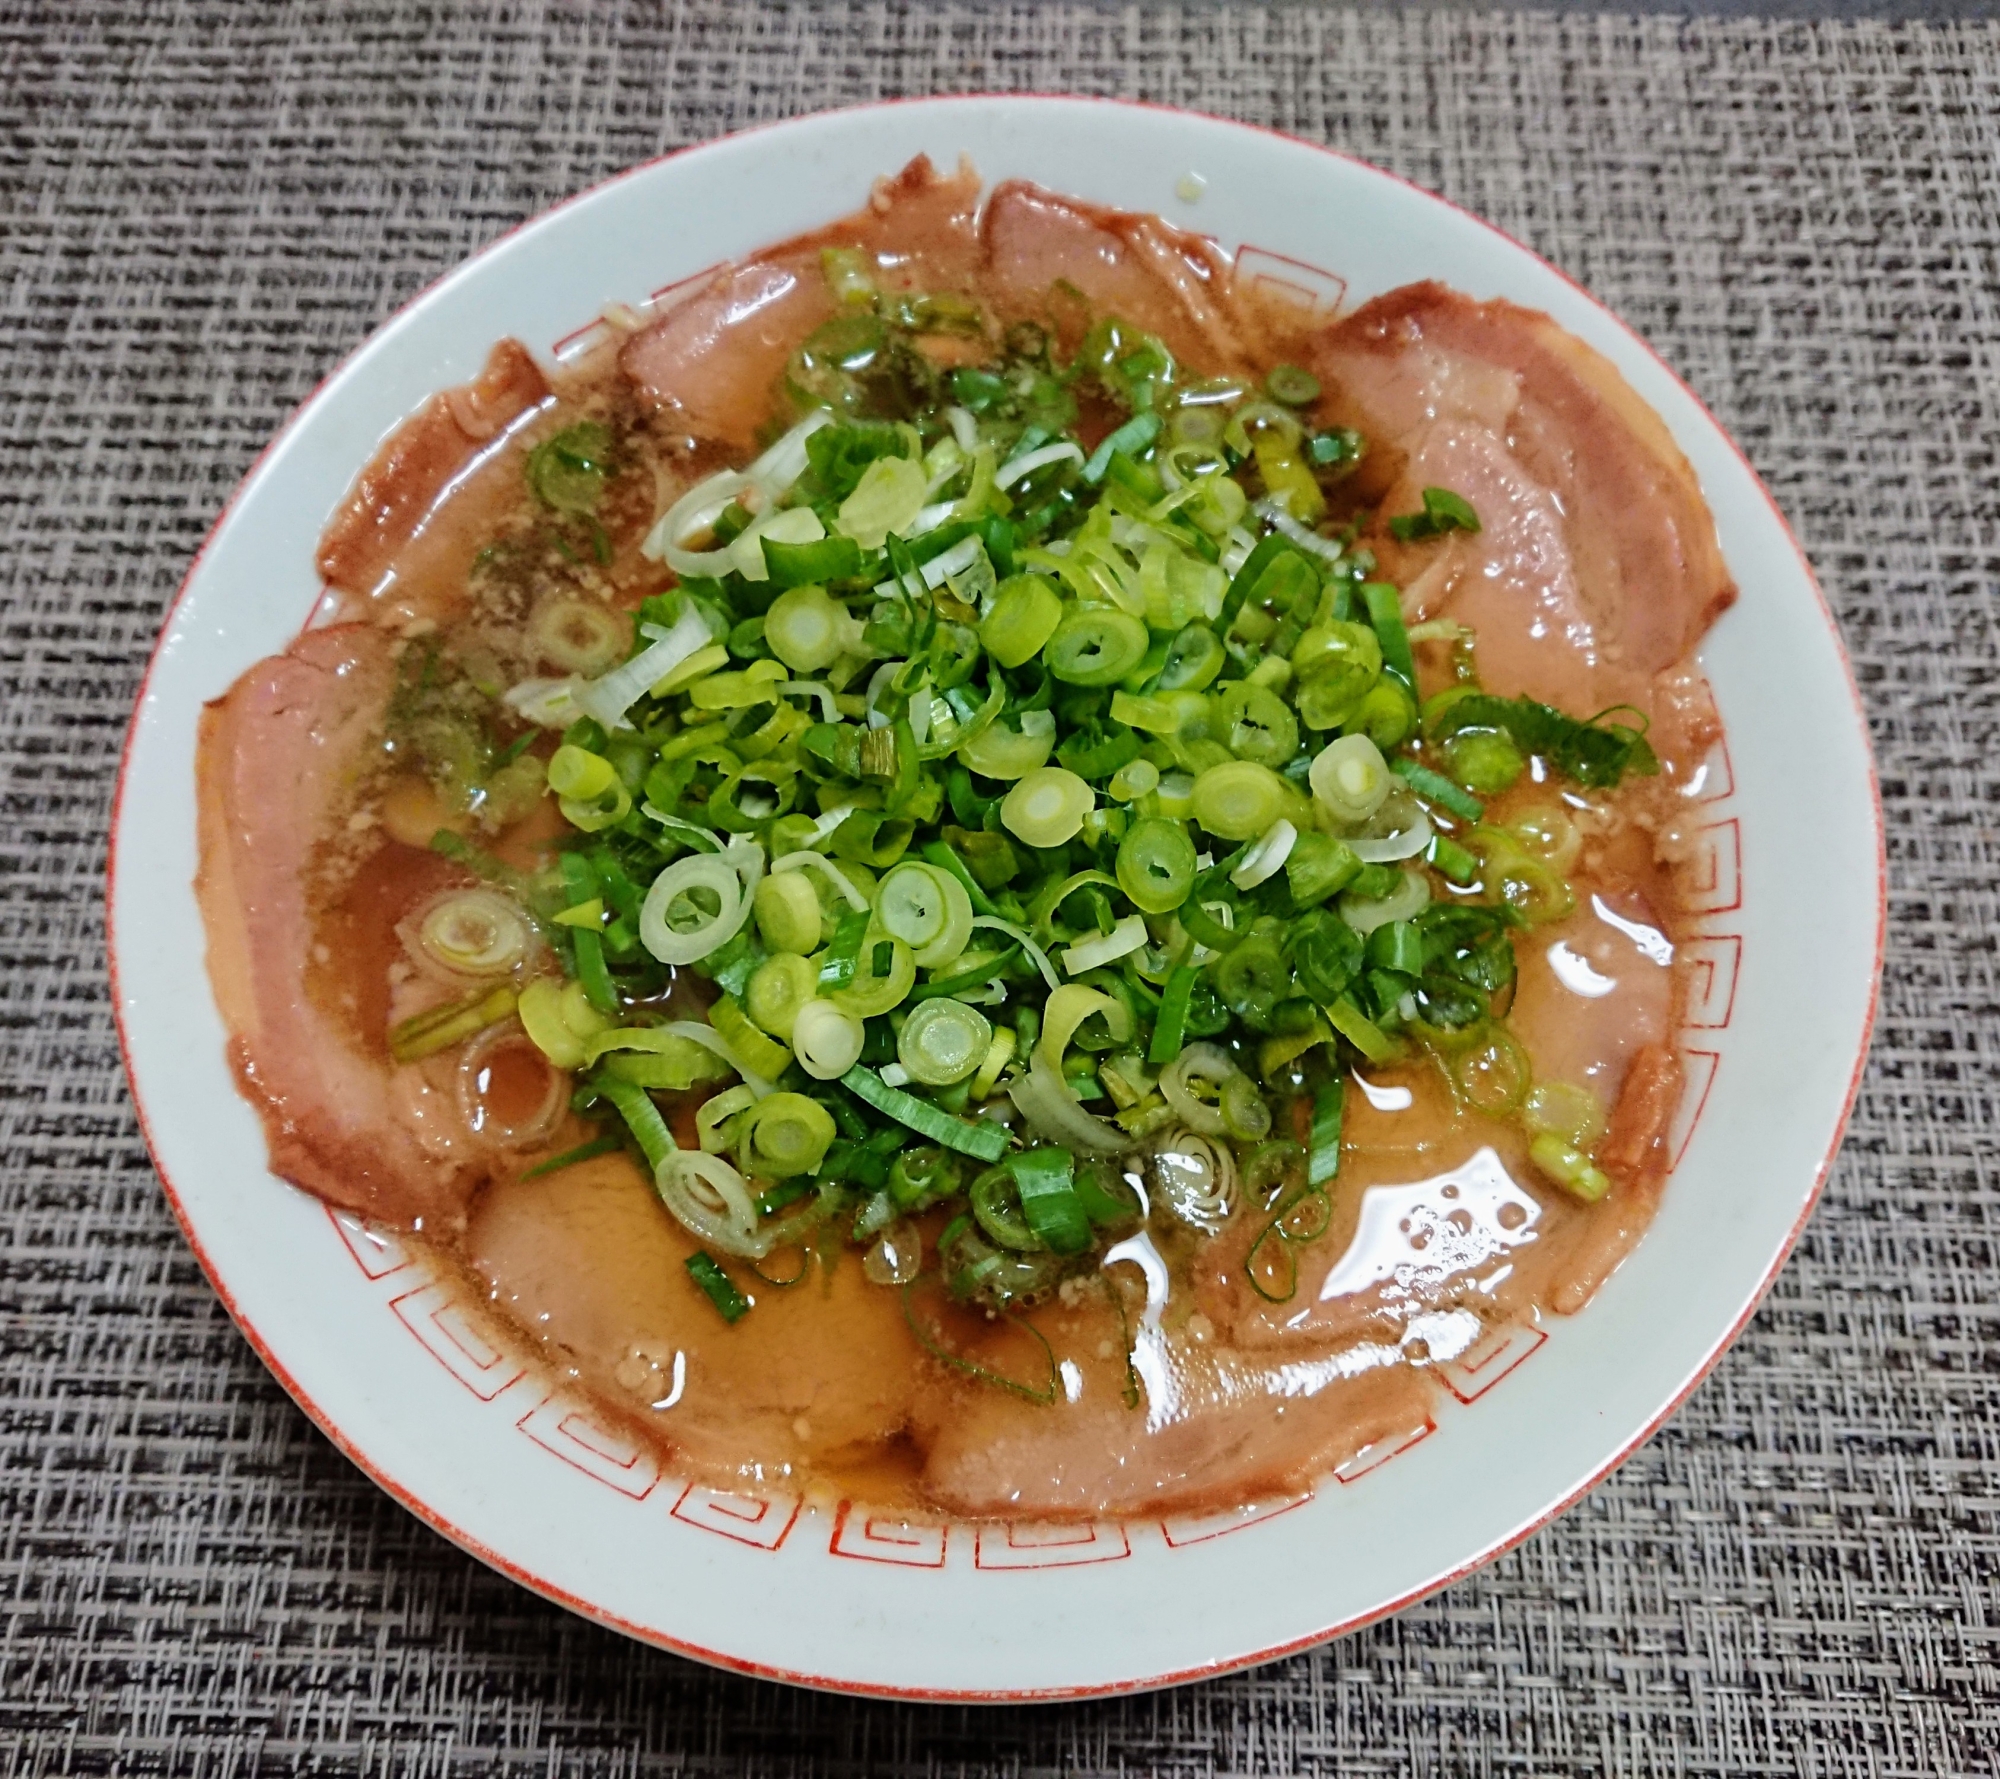 プロ直伝の本格的な京都ラーメン(醤油)の基本レシピ